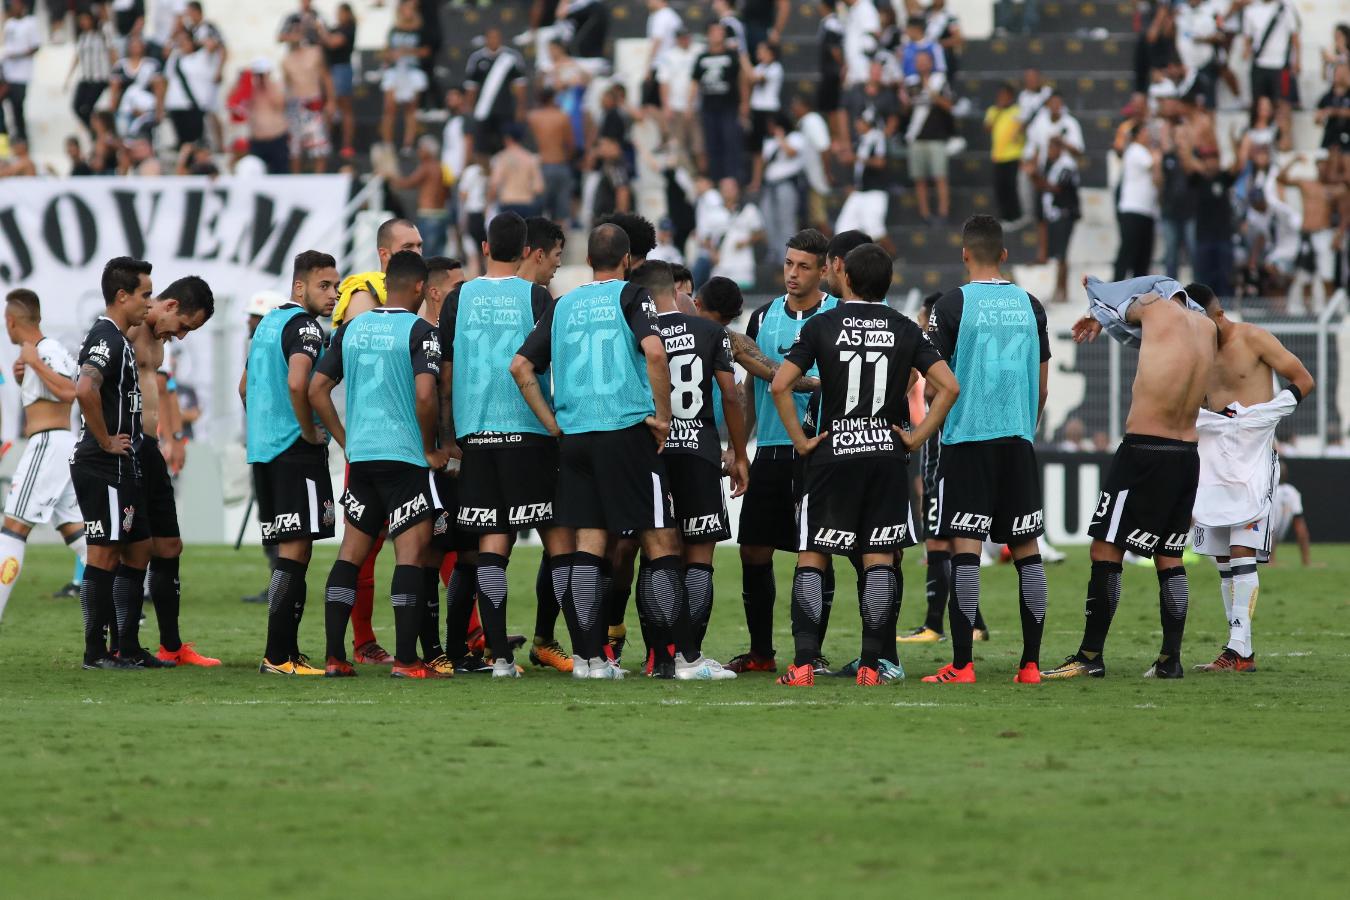 Organizada do Botafogo cobra reação e tem conversa com jogadores